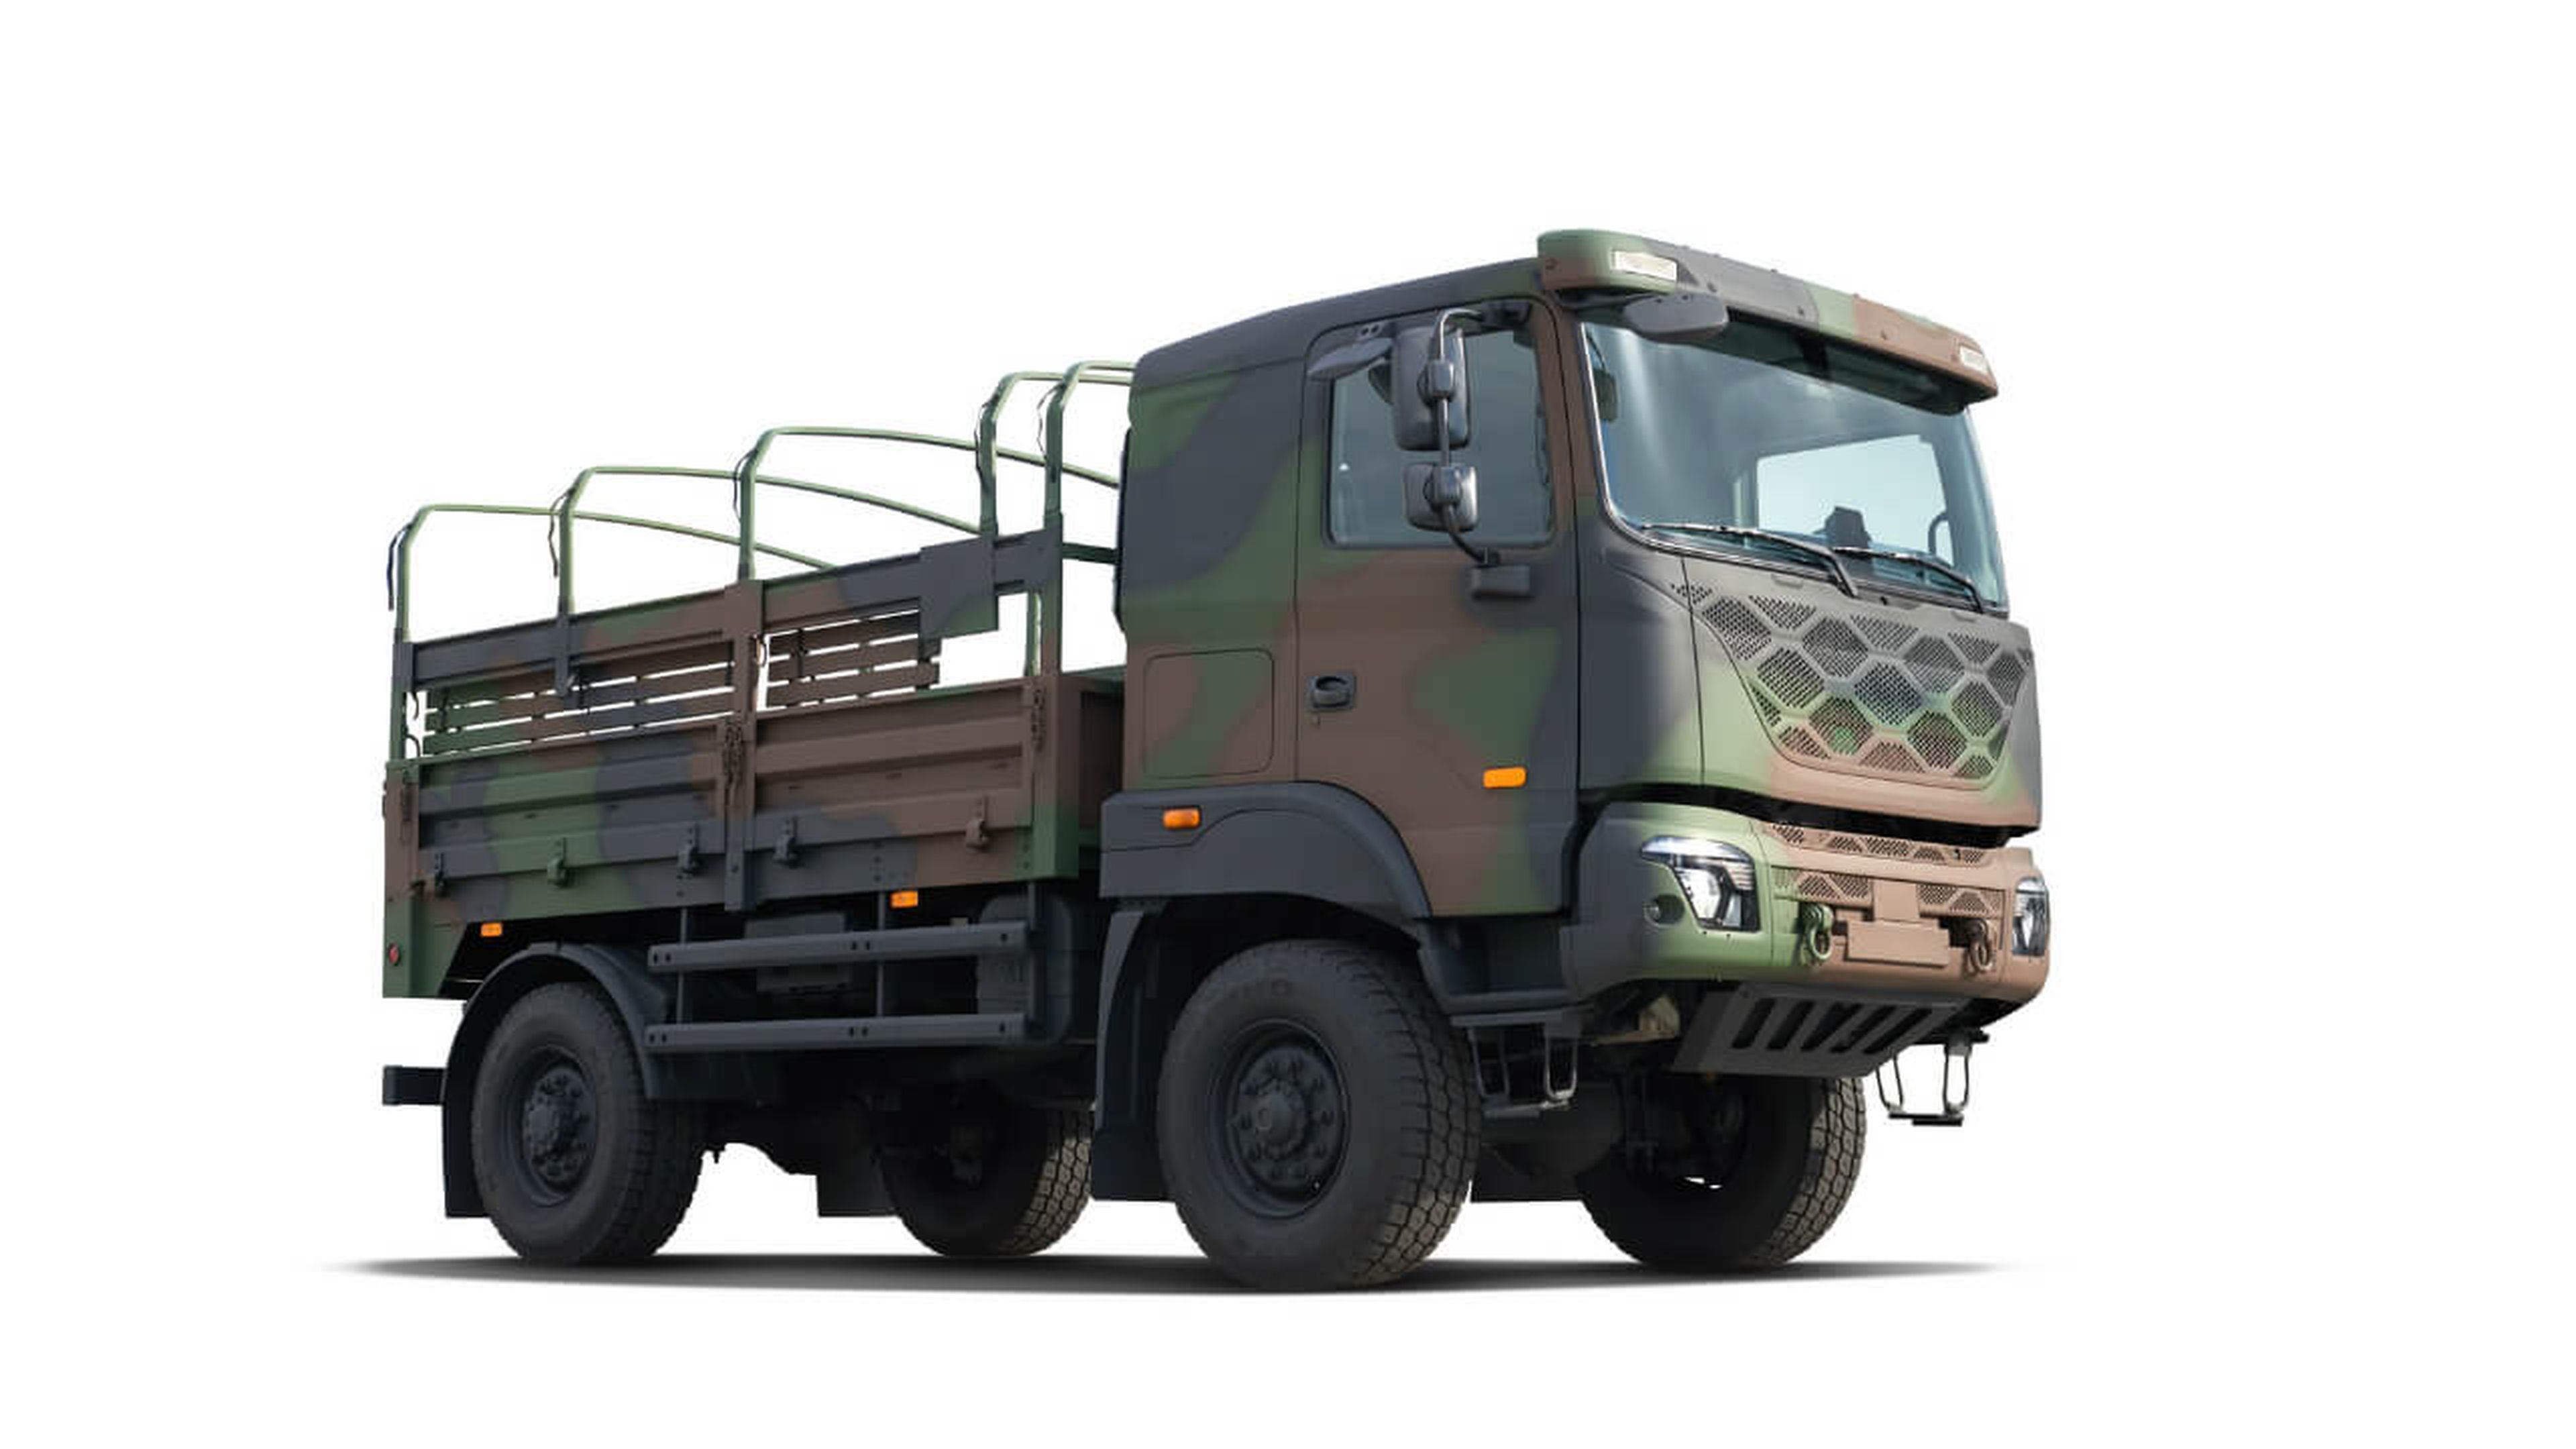 Kia fabrica vehículos militares y el próximo estará basado en el Mohave